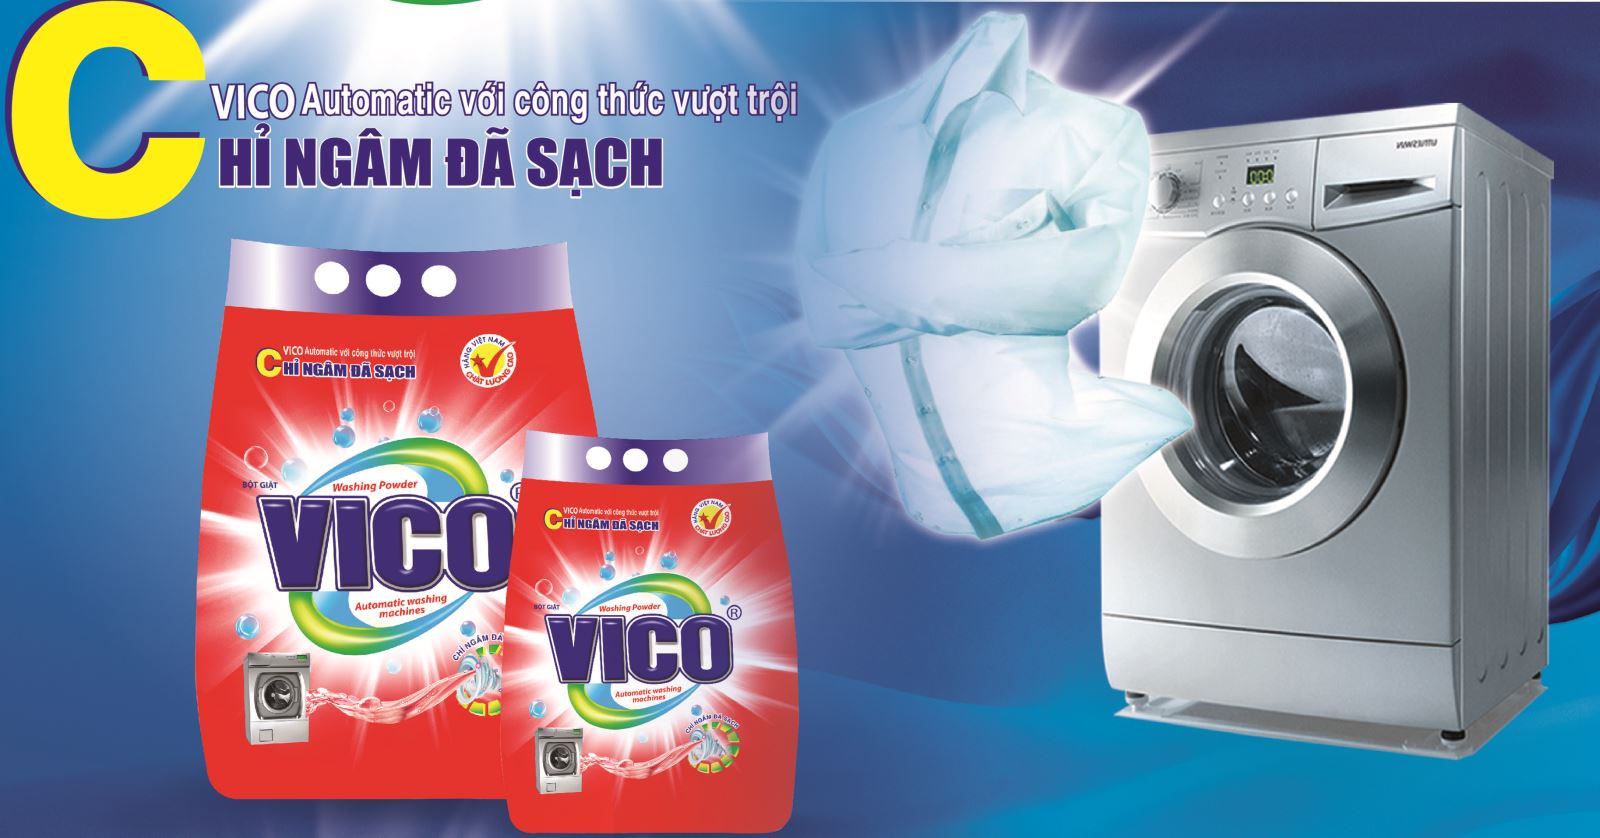 Bột giặt VICO Automatic - chỉ ngâm đã sạch